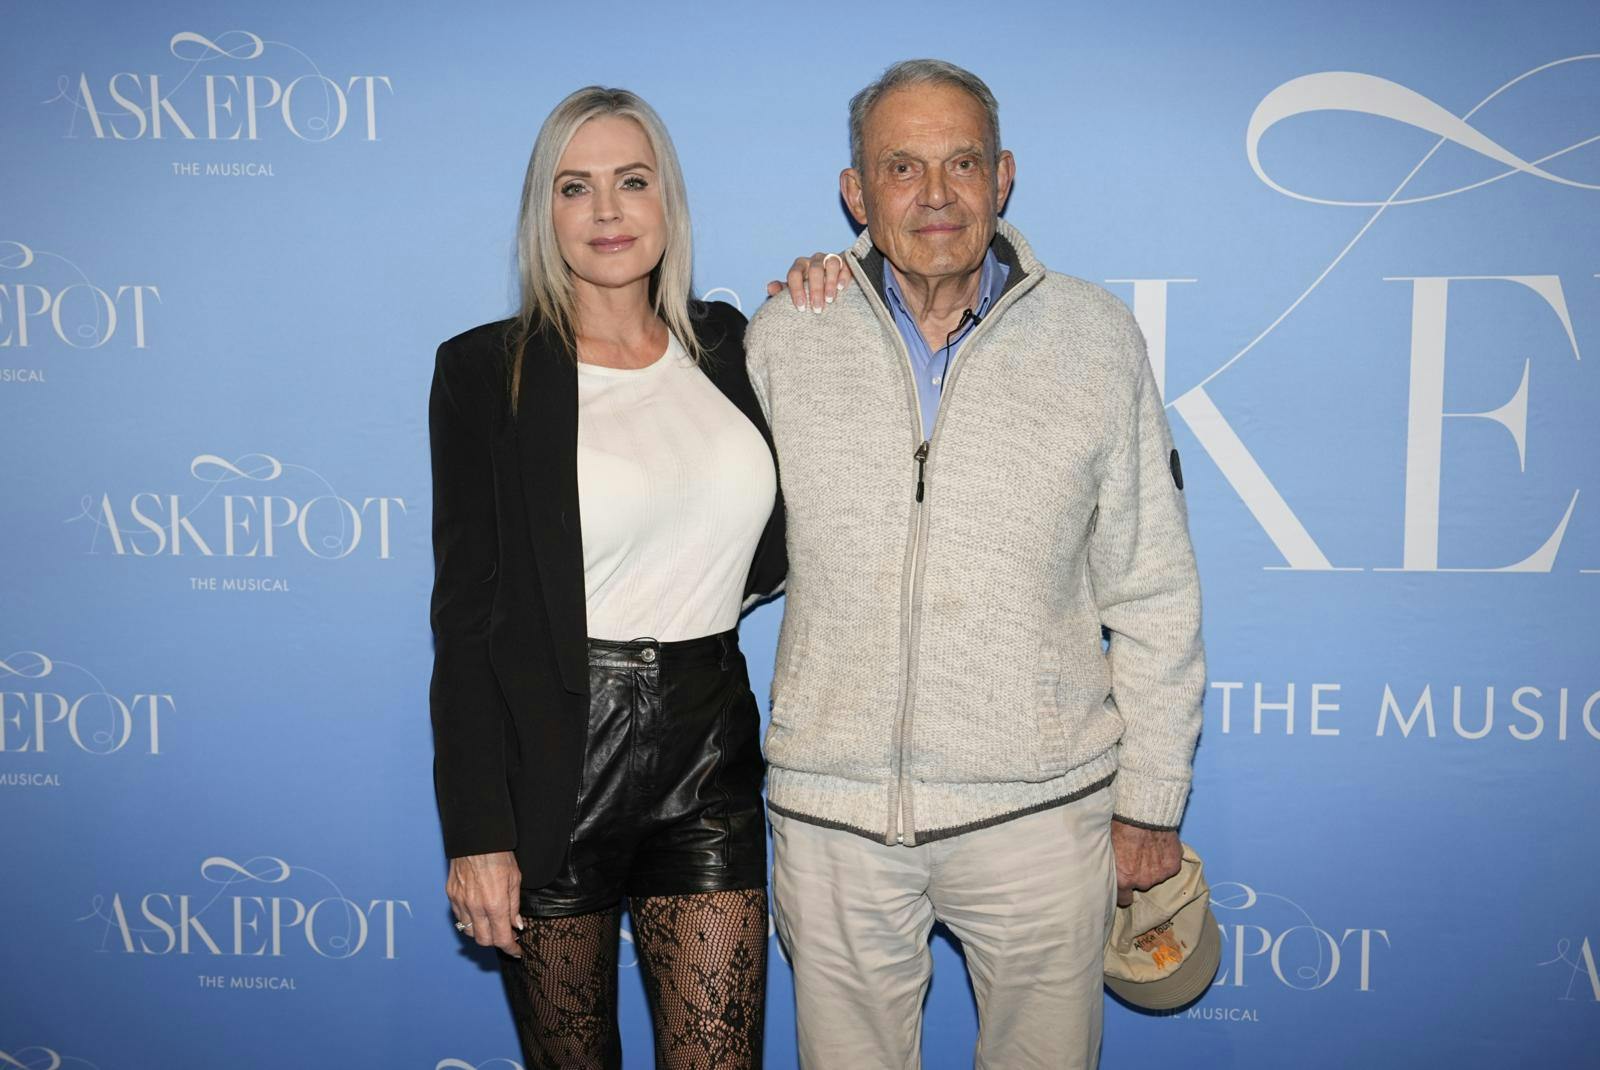 Janni og Karsten havde en hyggeaften i det københavnske til premierne på "Askepot - The Musical".